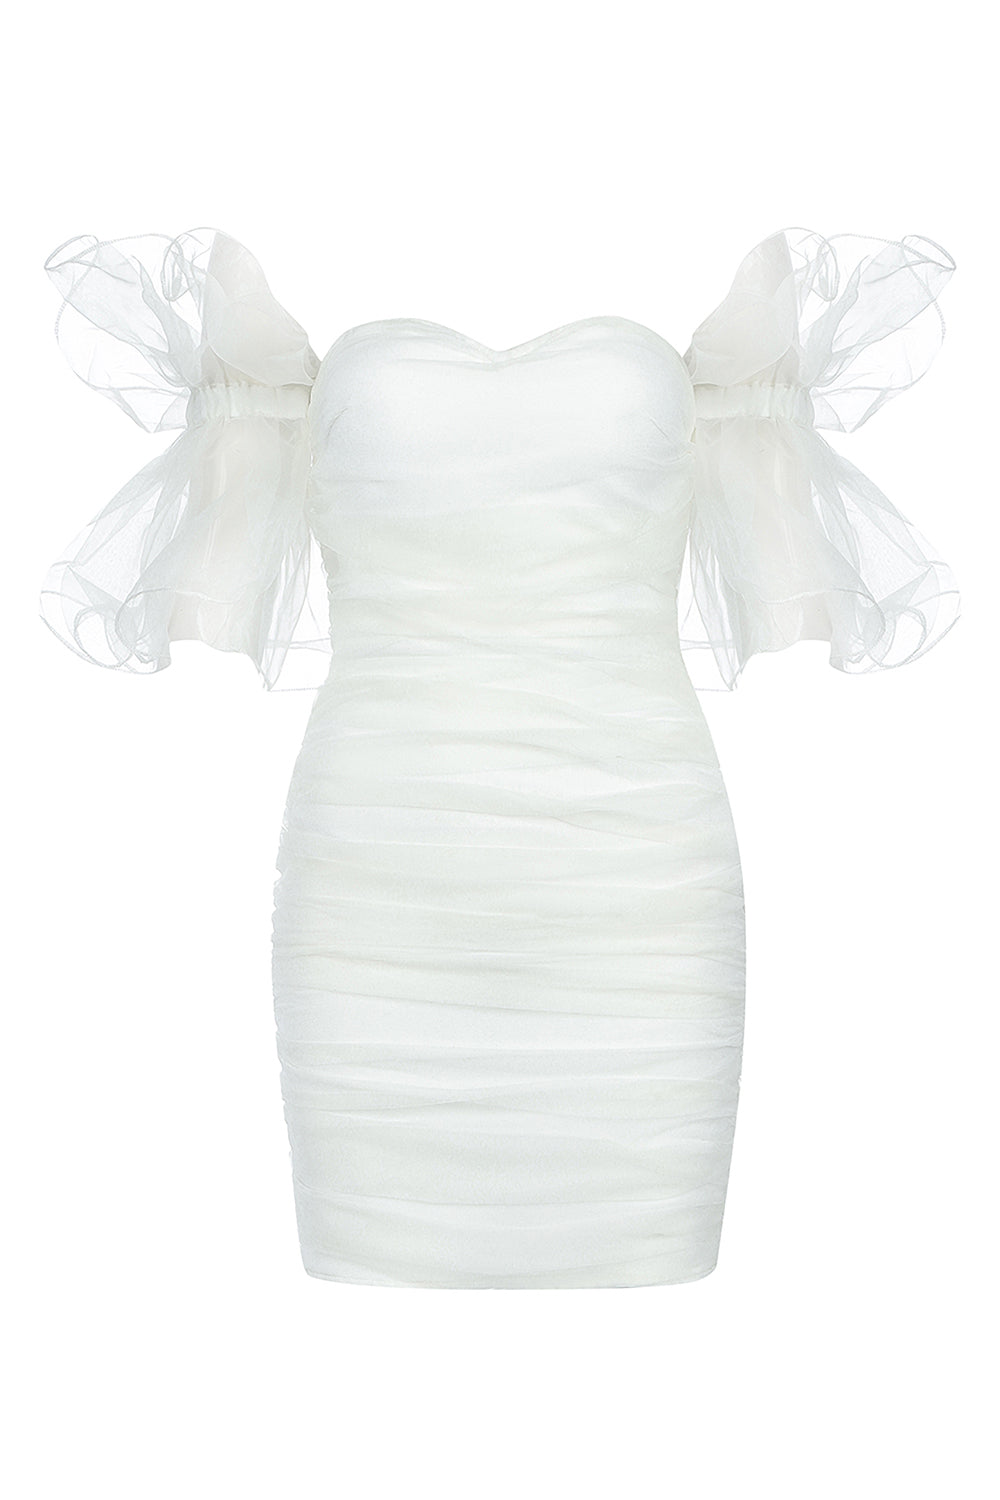 White Sleeveless Mesh Ruched White Bandage Dress - IULOVER